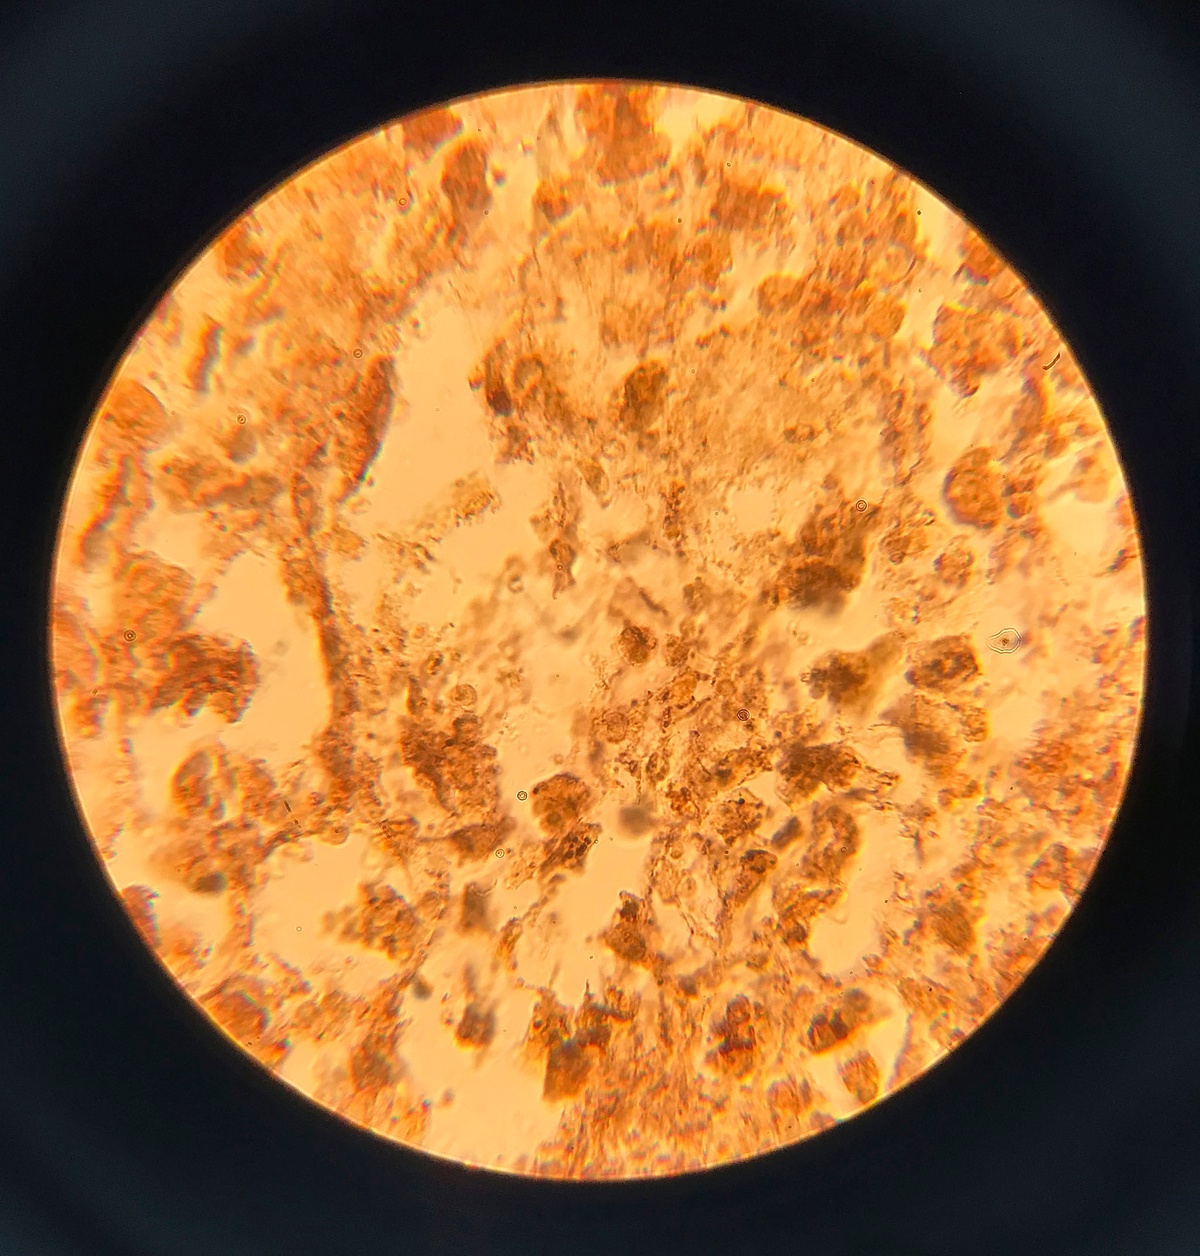 Puppies Puppies (Jade Guanaro Kuriki-Olivo). Treponema pallidum (Syphilis), 2018. glass, treponema pallidum, Bresser Erudite microscope. 32 x 20 x 10 cm